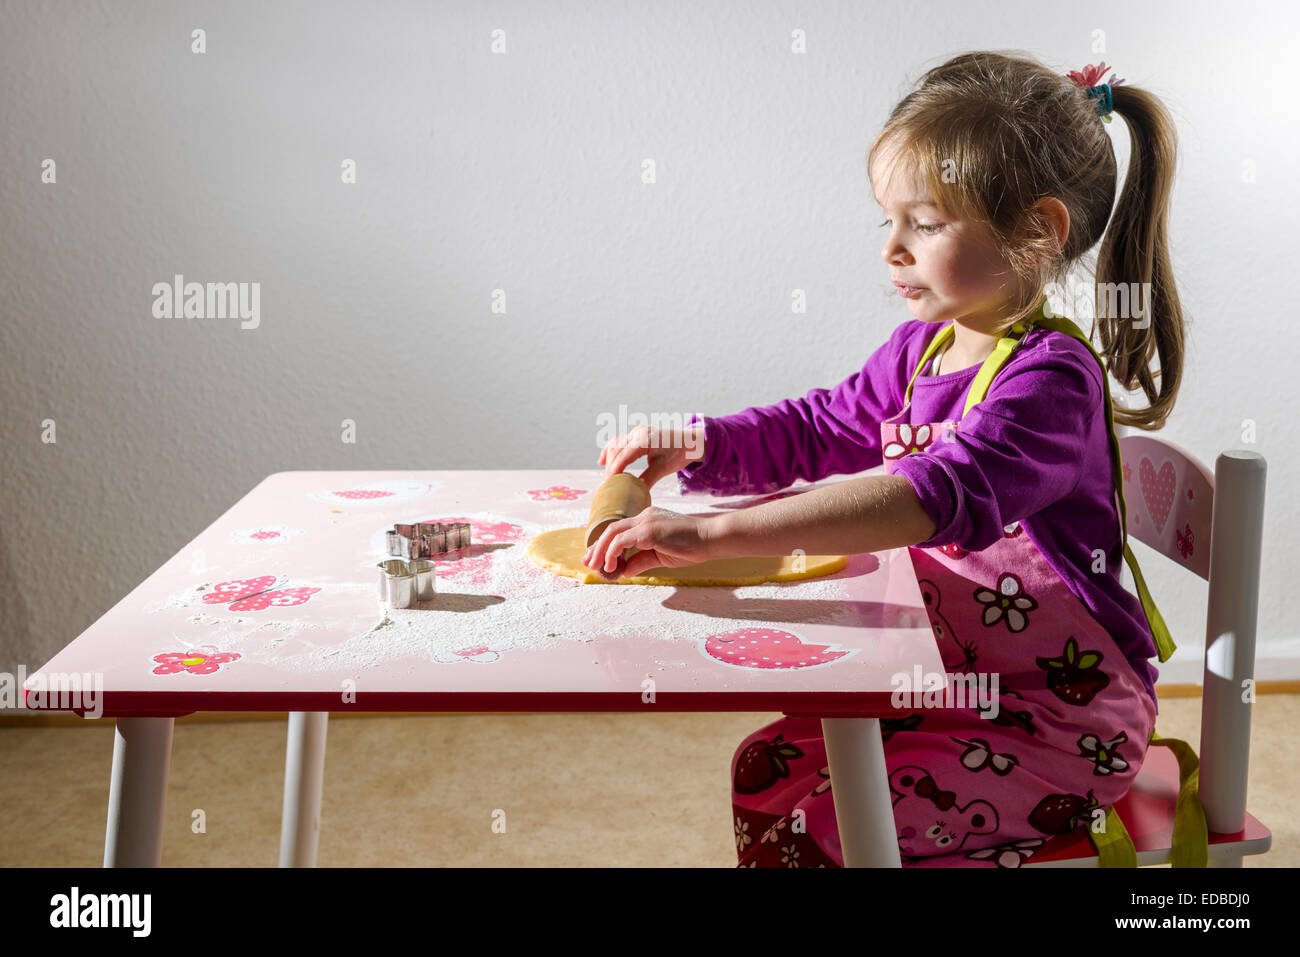 Fille, 3 ans, baking Christmas Cookies, rouler la pâte sur une table Banque D'Images